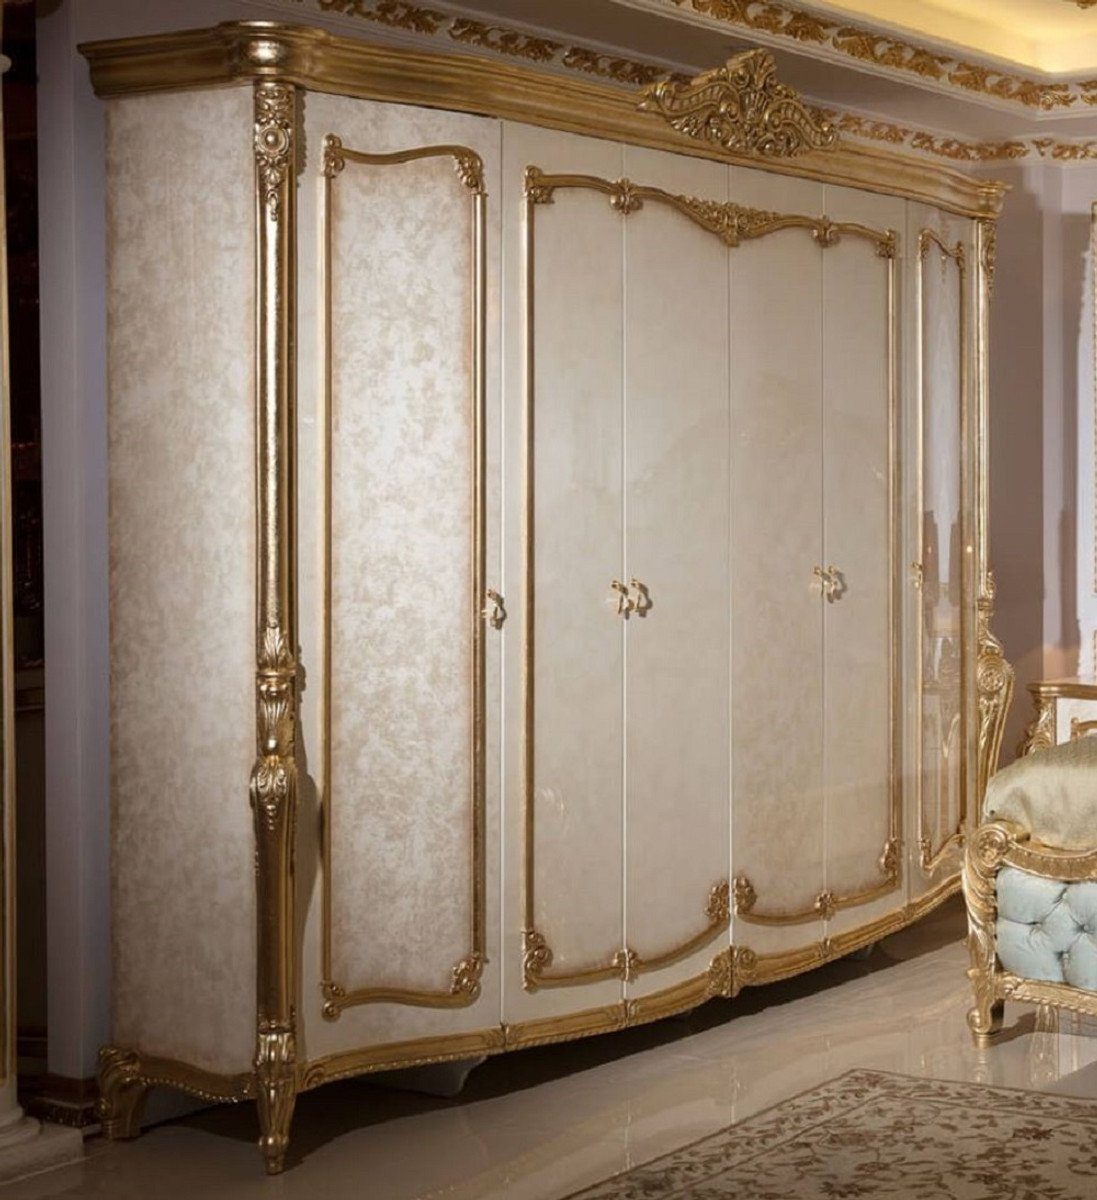 Casa Padrino Kleiderschrank Luxus Barock Schlafzimmerschrank Weiß / Beige / Gold - Prunkvoller Massivholz Kleiderschrank im Barockstil - Barock Schlafzimmer Möbel - Edel & Prunkvoll